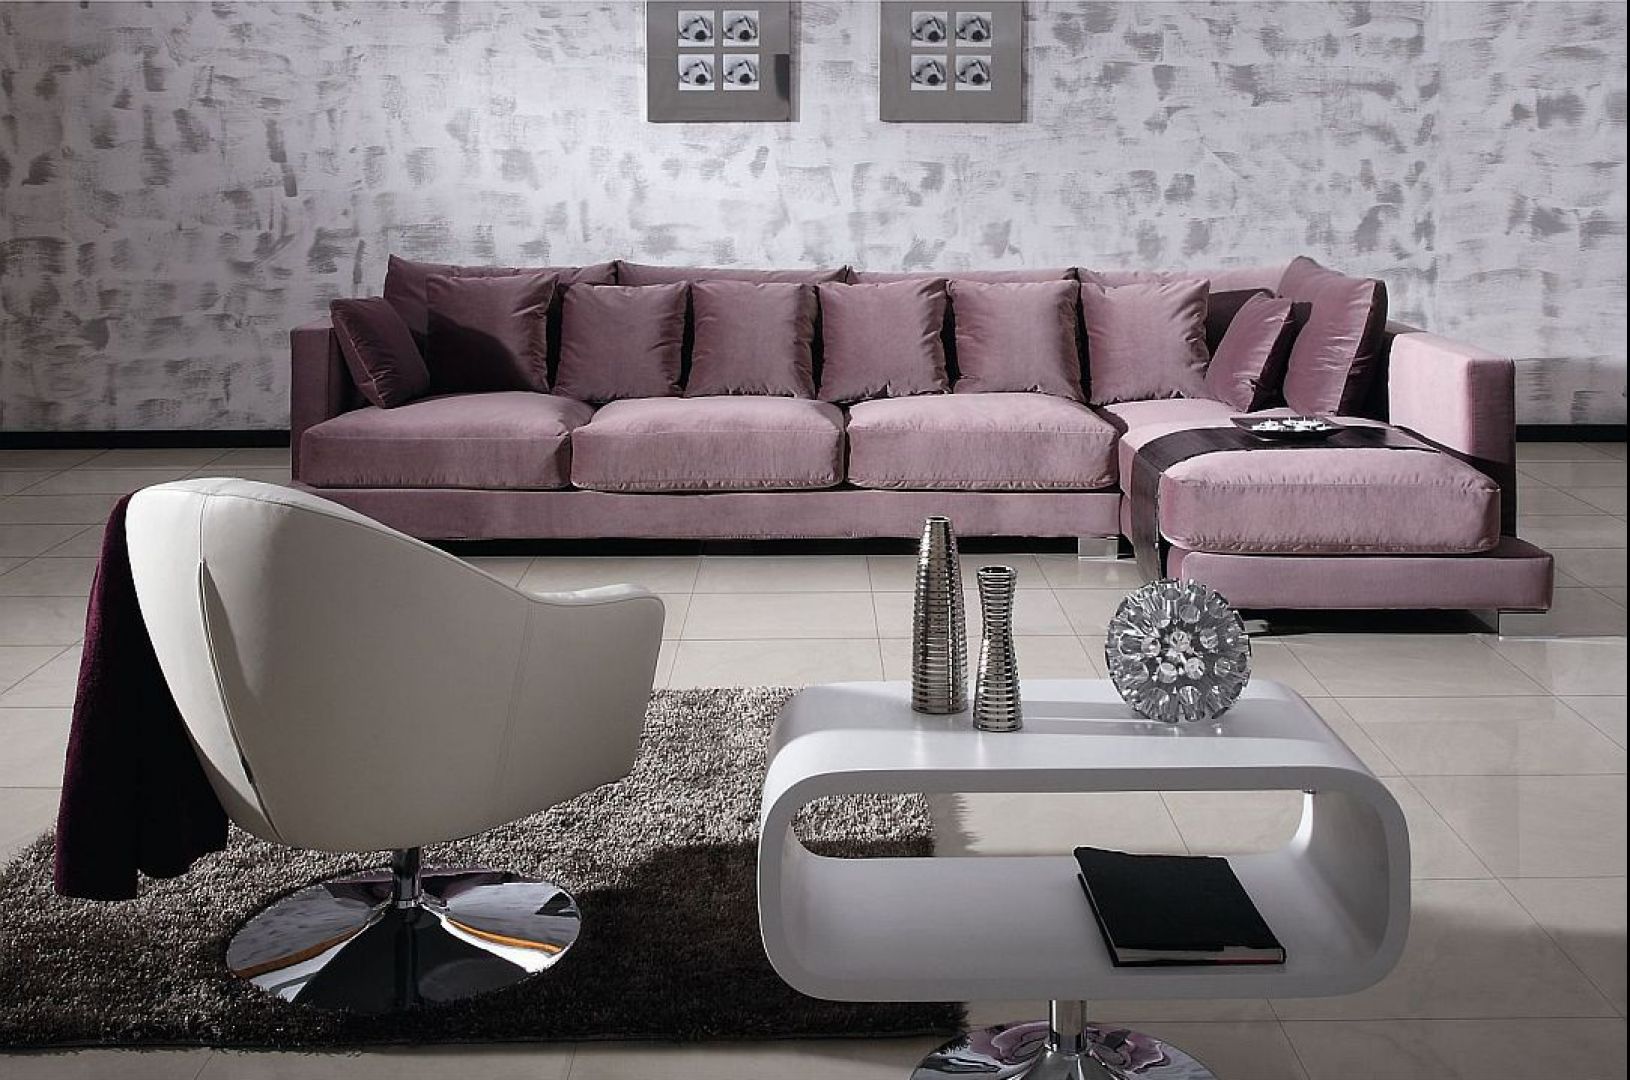 Pudrowy fiolet pięknie komponuje się delikatnie połyskującą tkaniną na sofie 